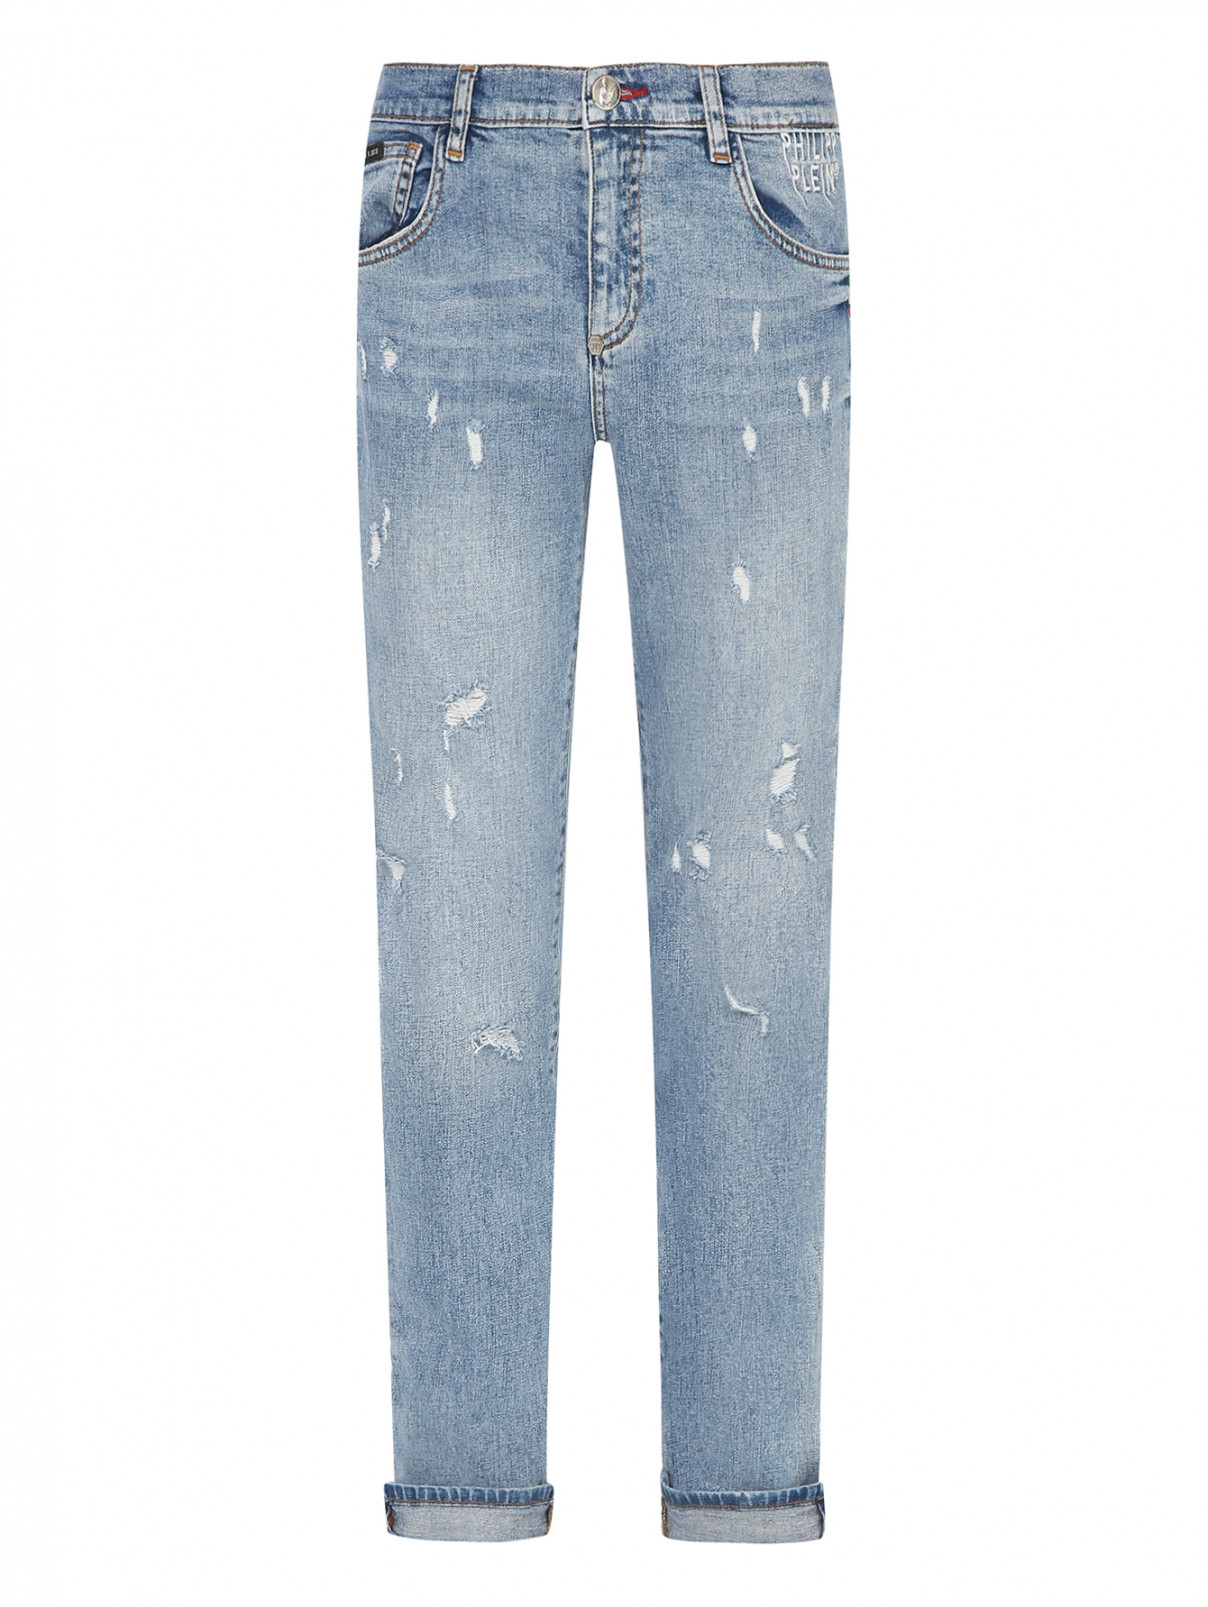 Прямые джинсы с разрезами Philipp Plein  –  Общий вид  – Цвет:  Синий